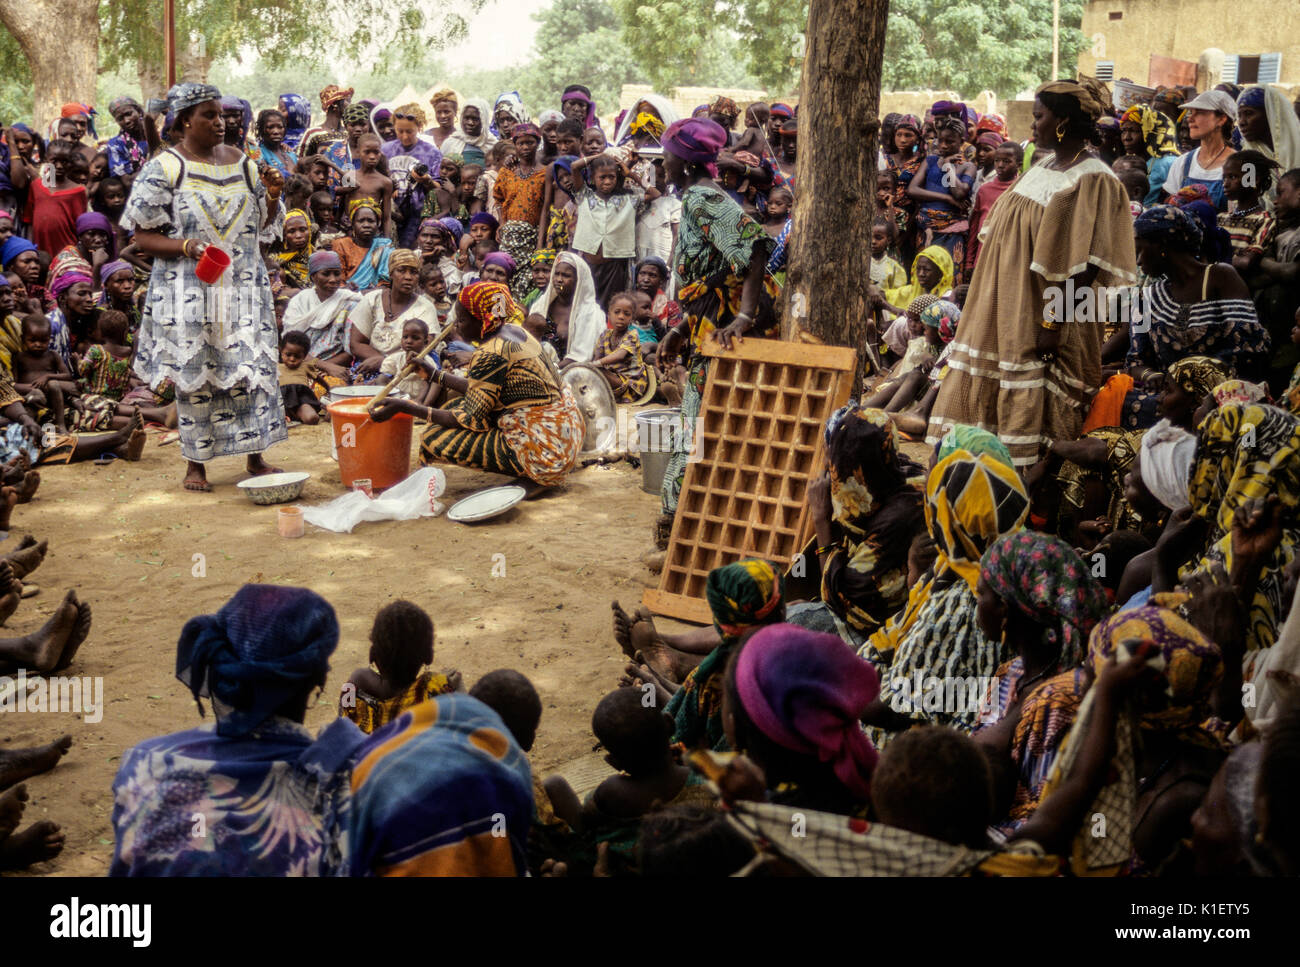 Le Niger, Ouna Village, Afrique de l'Ouest. Démonstration de fabrication de savon. (Zarma Djerma) groupe tribal. Deux volontaires du Corps de la paix sont dans la foule. Banque D'Images